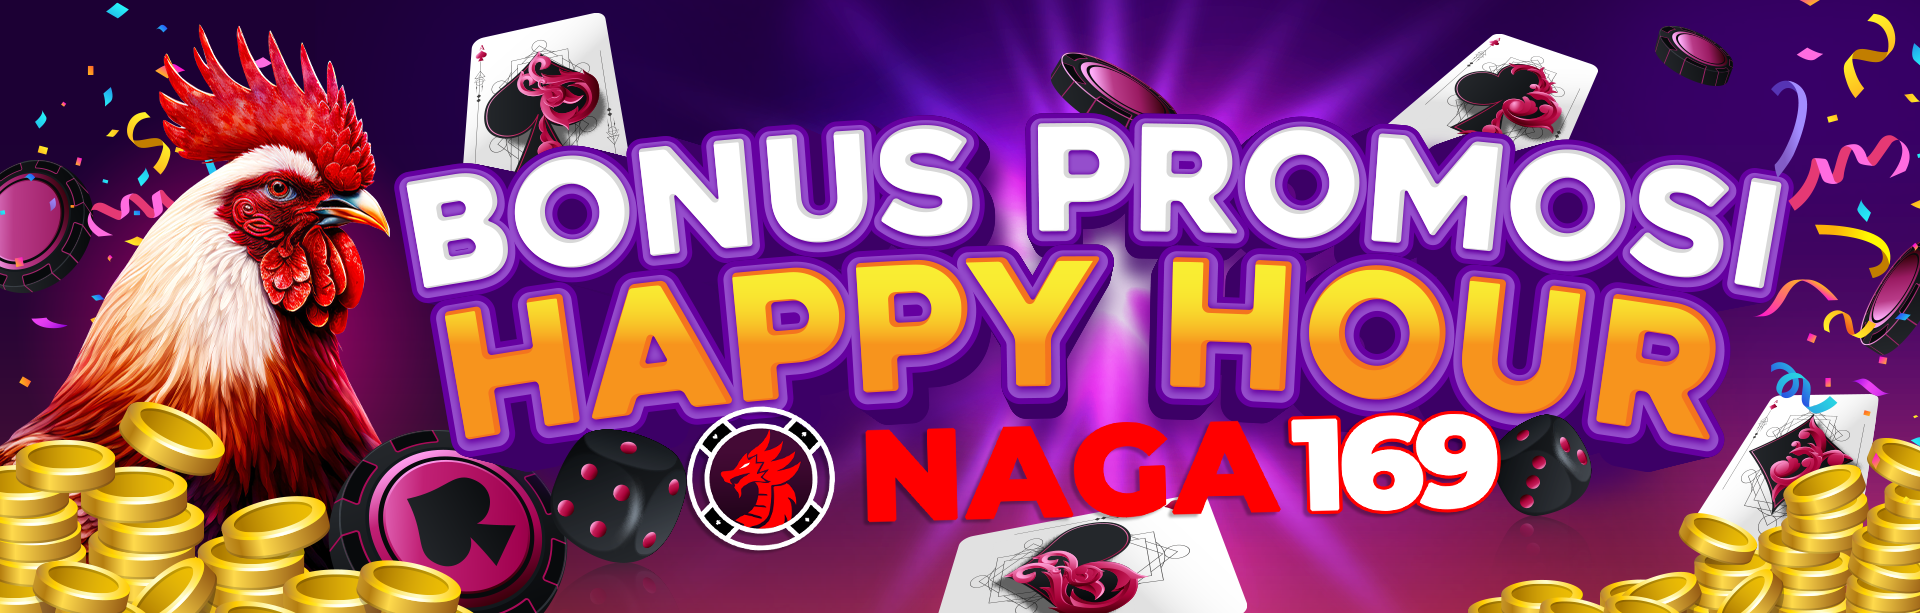 BONUS HAPPY HOUR - NAGA169